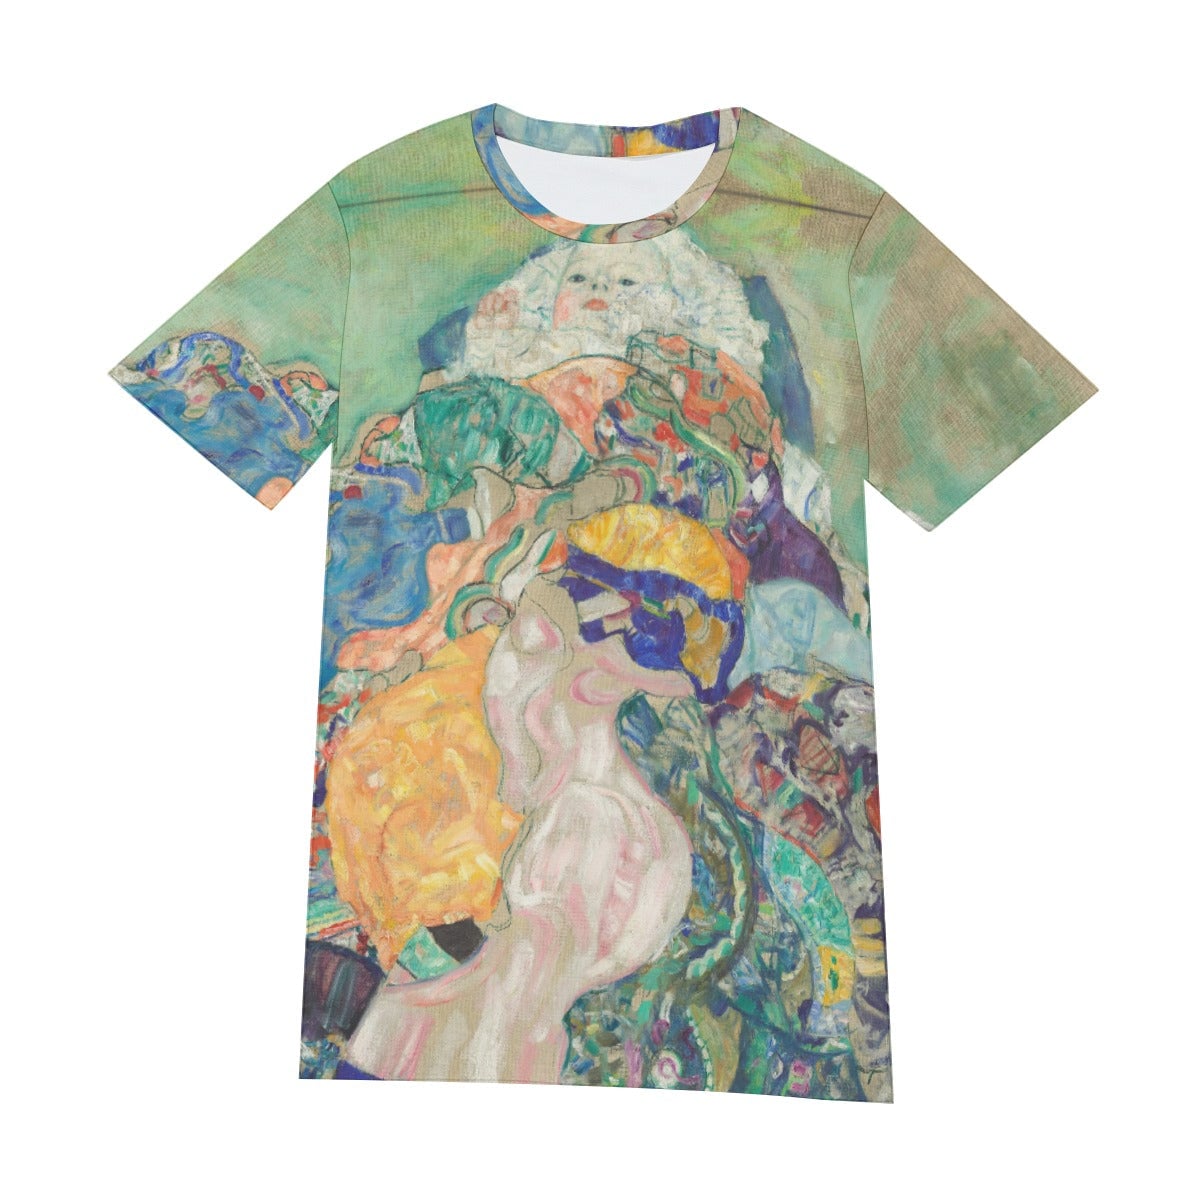 Baby 1917 by Gustav Klimt T-Shirt